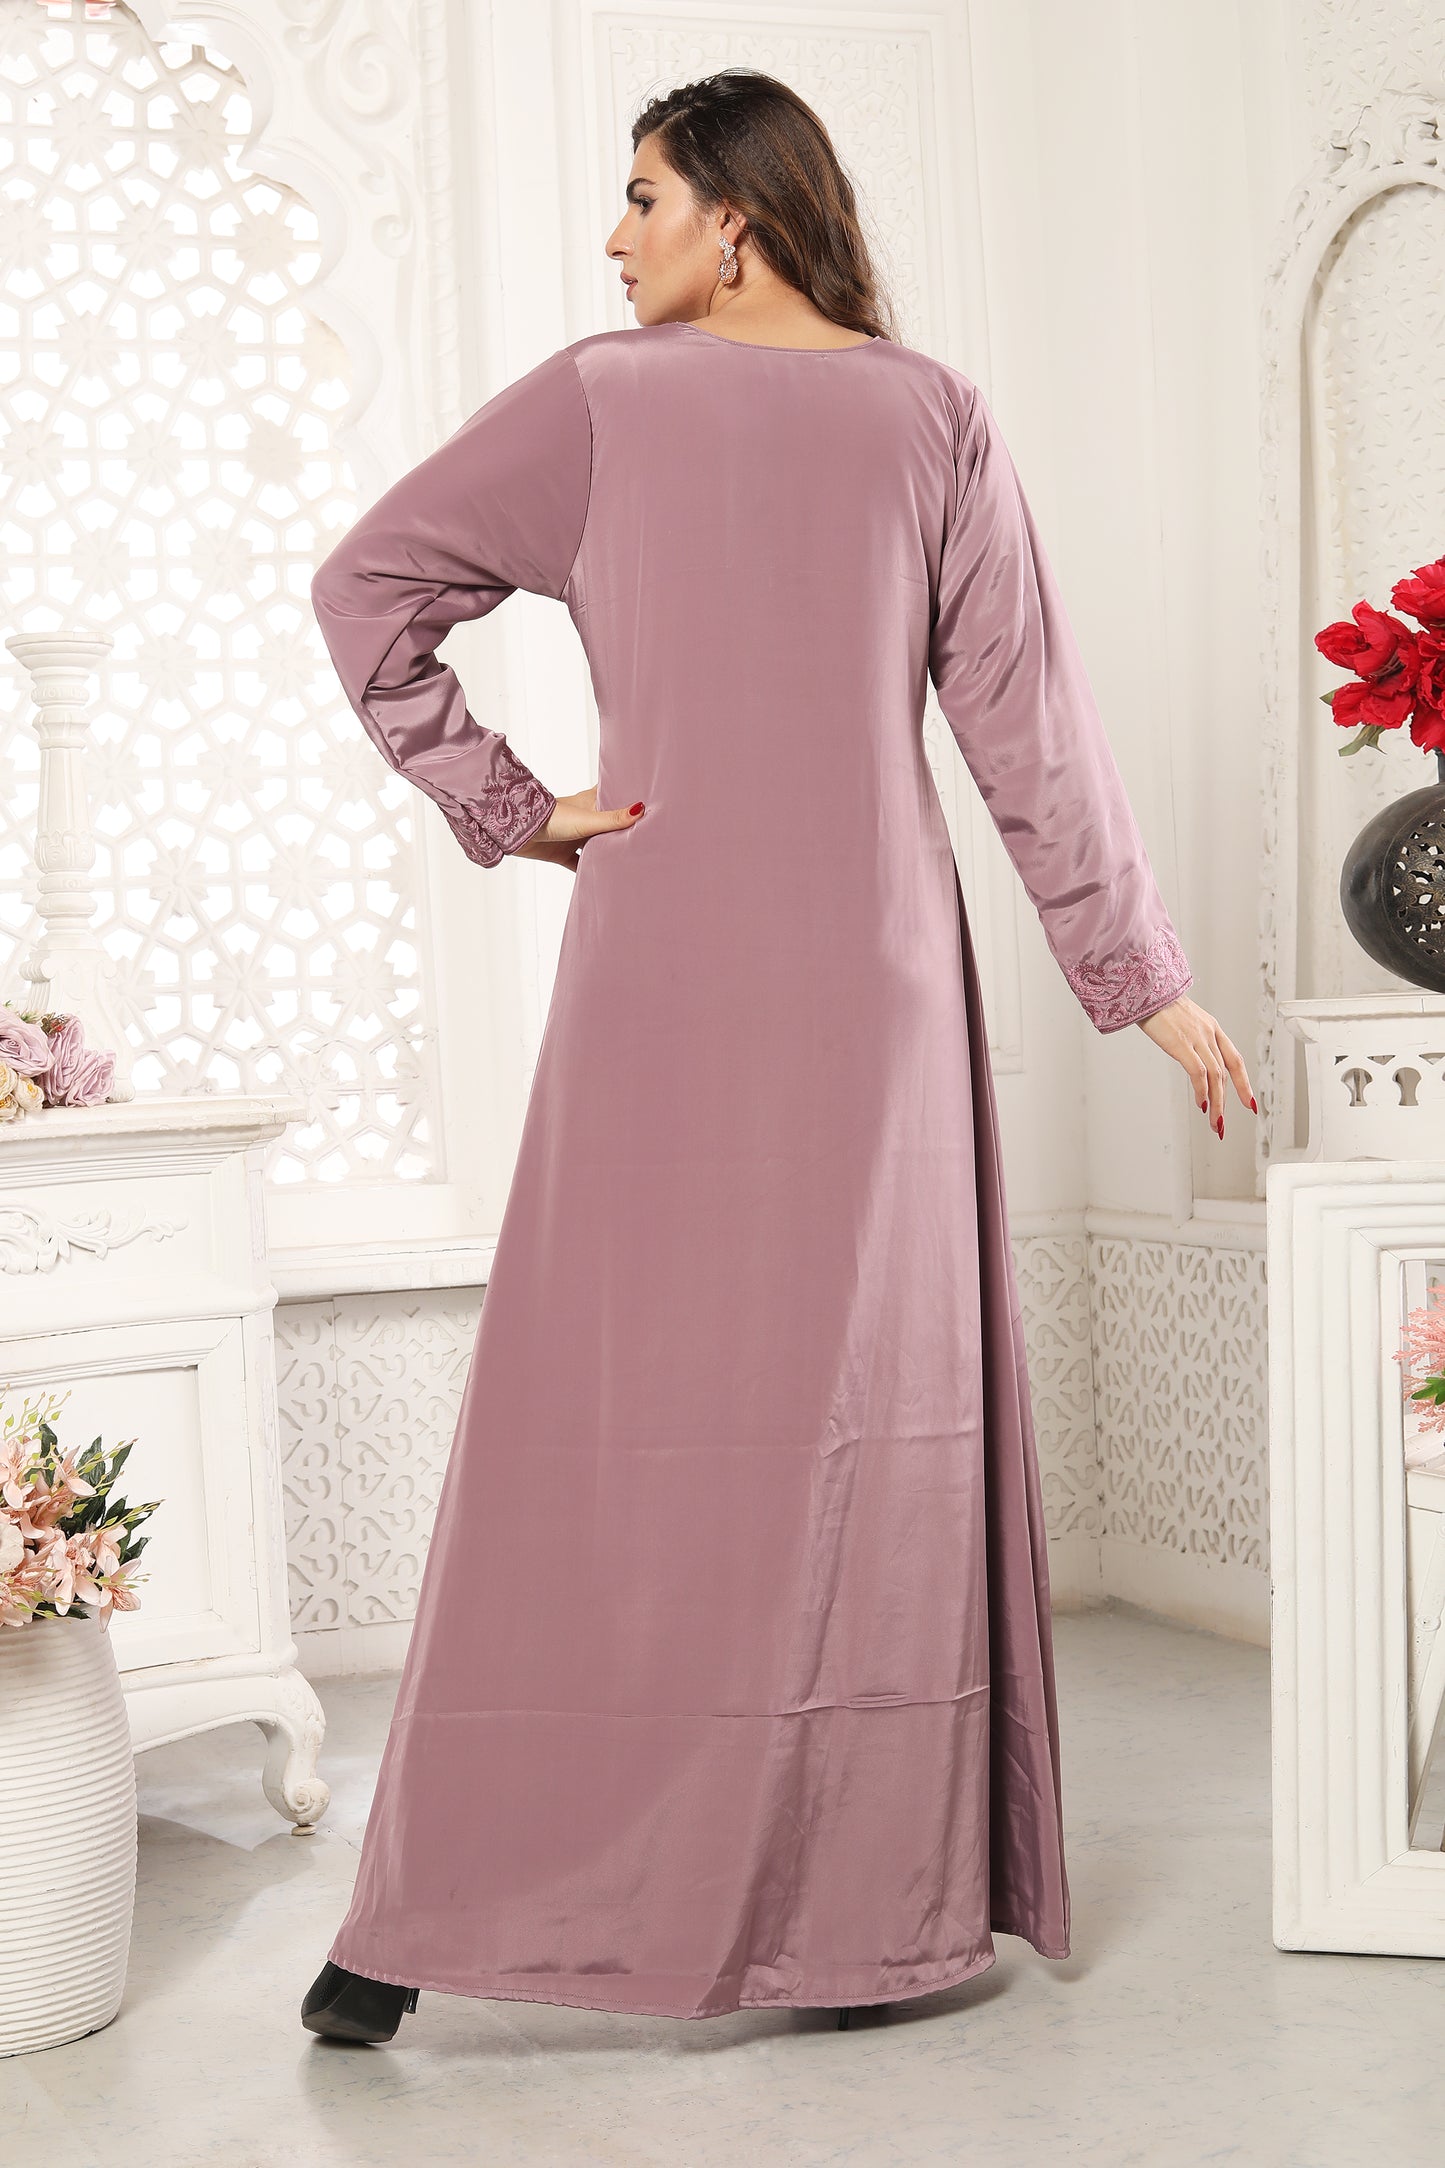 Modern Eid Wear for Women in Pastel Purple Party Gown